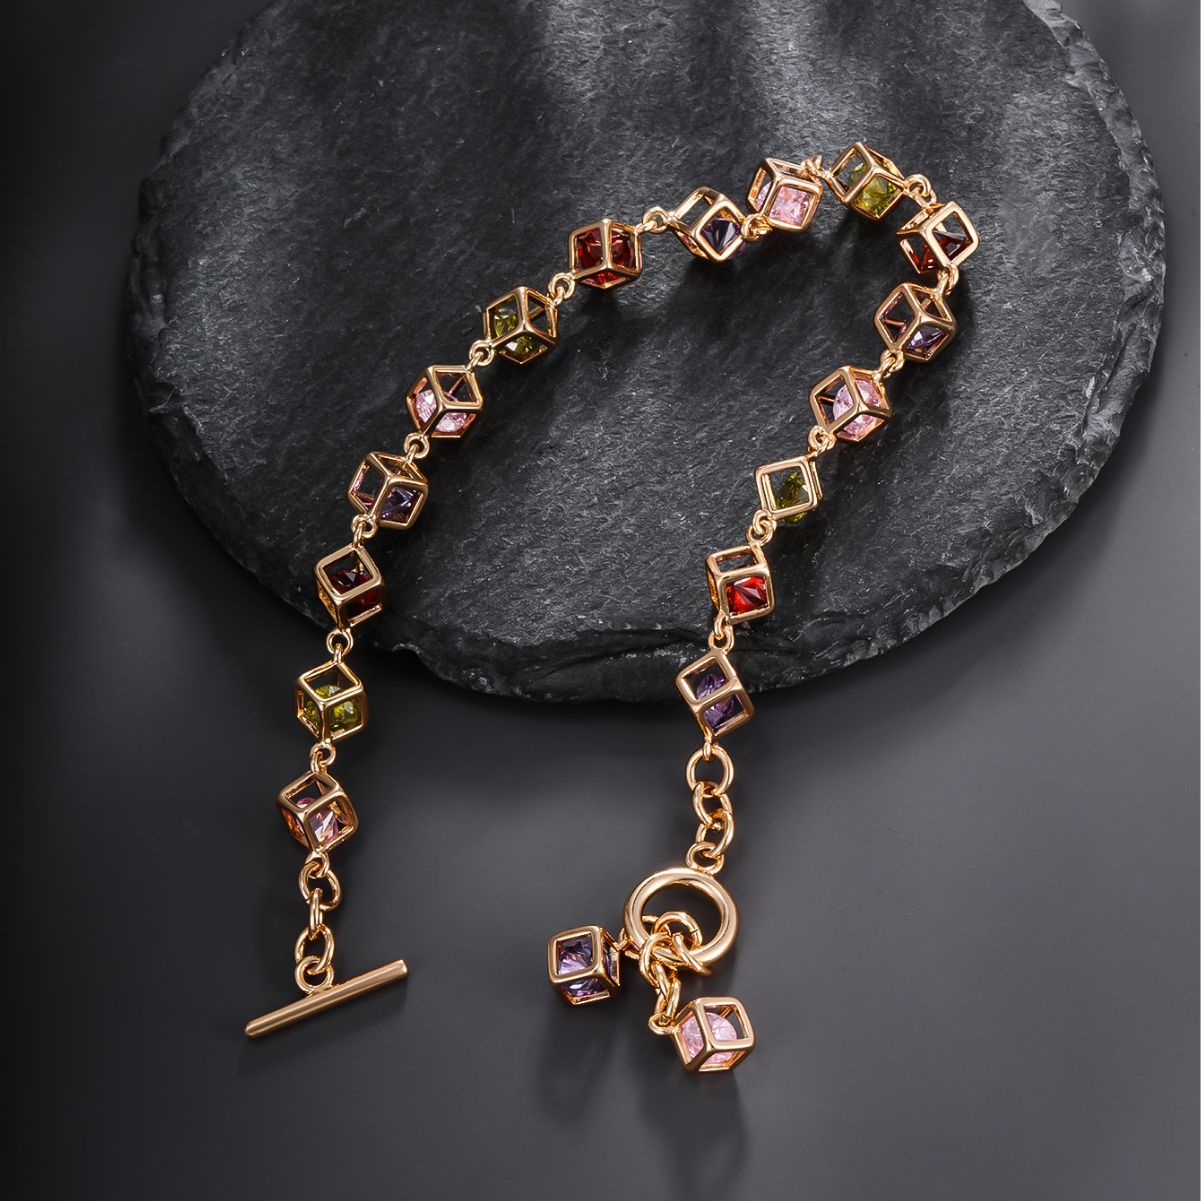 Light Luxury Fashion Colorful Man-made Gemstone Bracelet